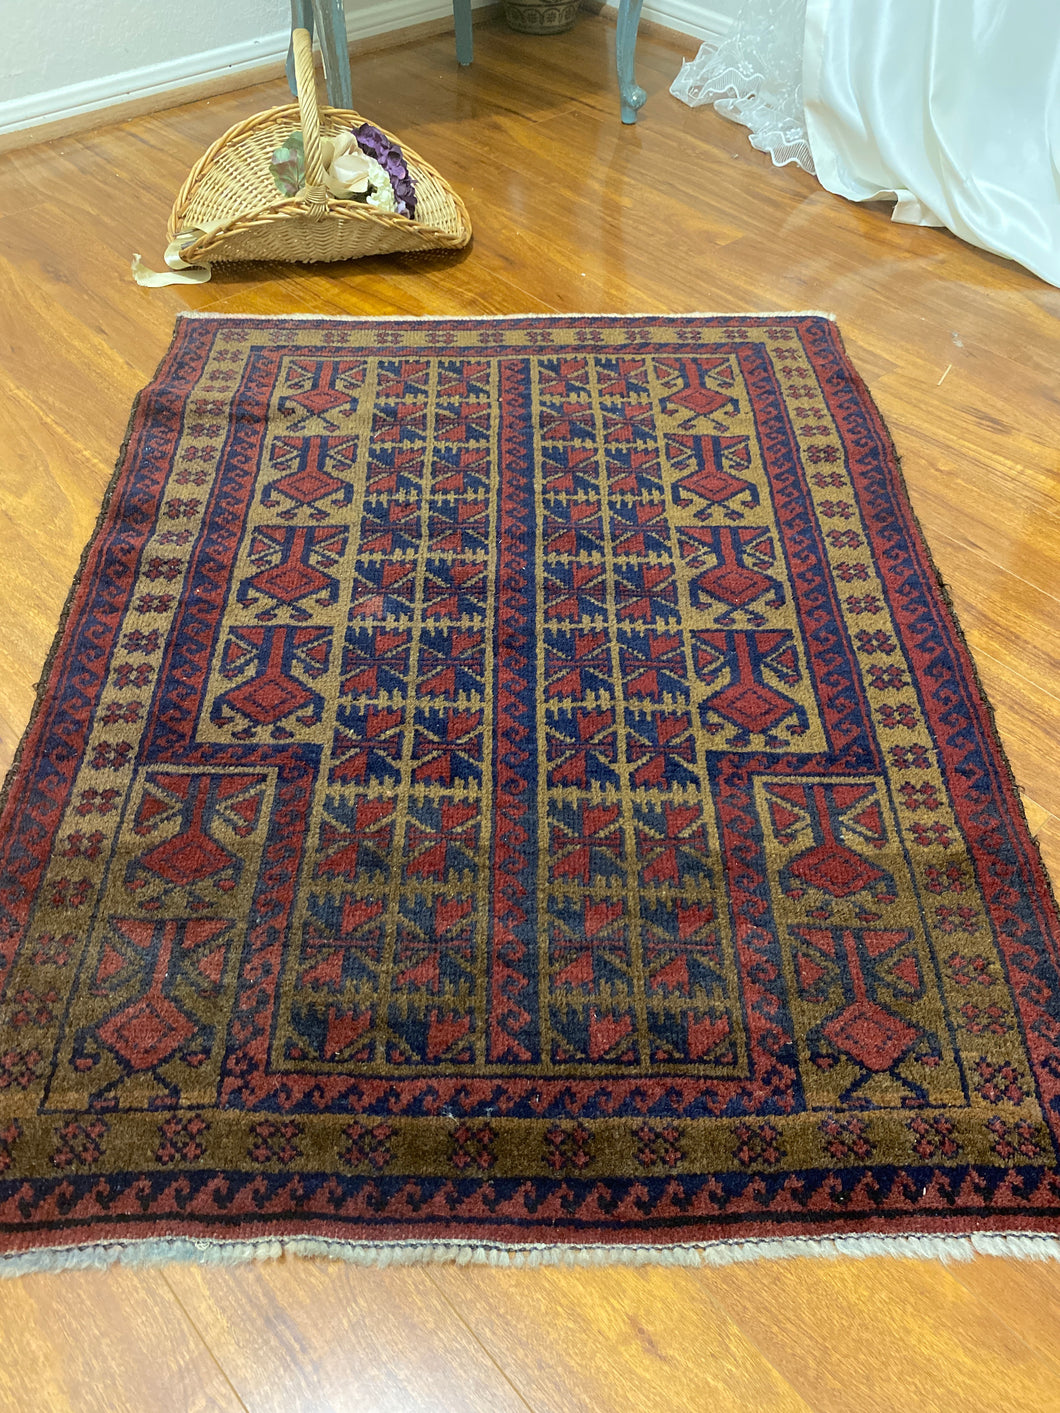 Vintage handmade rug 3’x4’